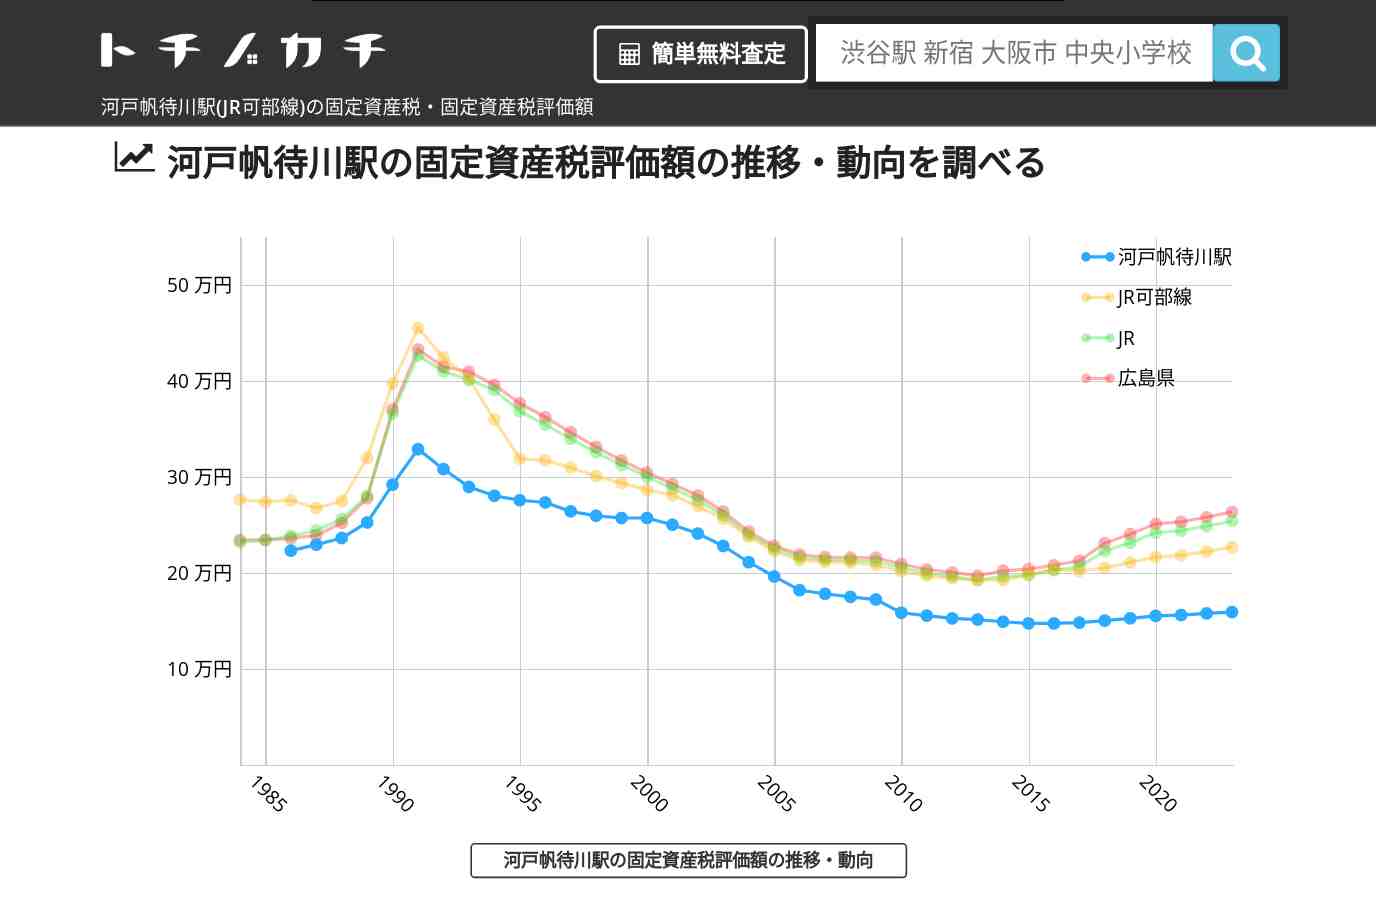 河戸帆待川駅(JR可部線)の固定資産税・固定資産税評価額 | トチノカチ